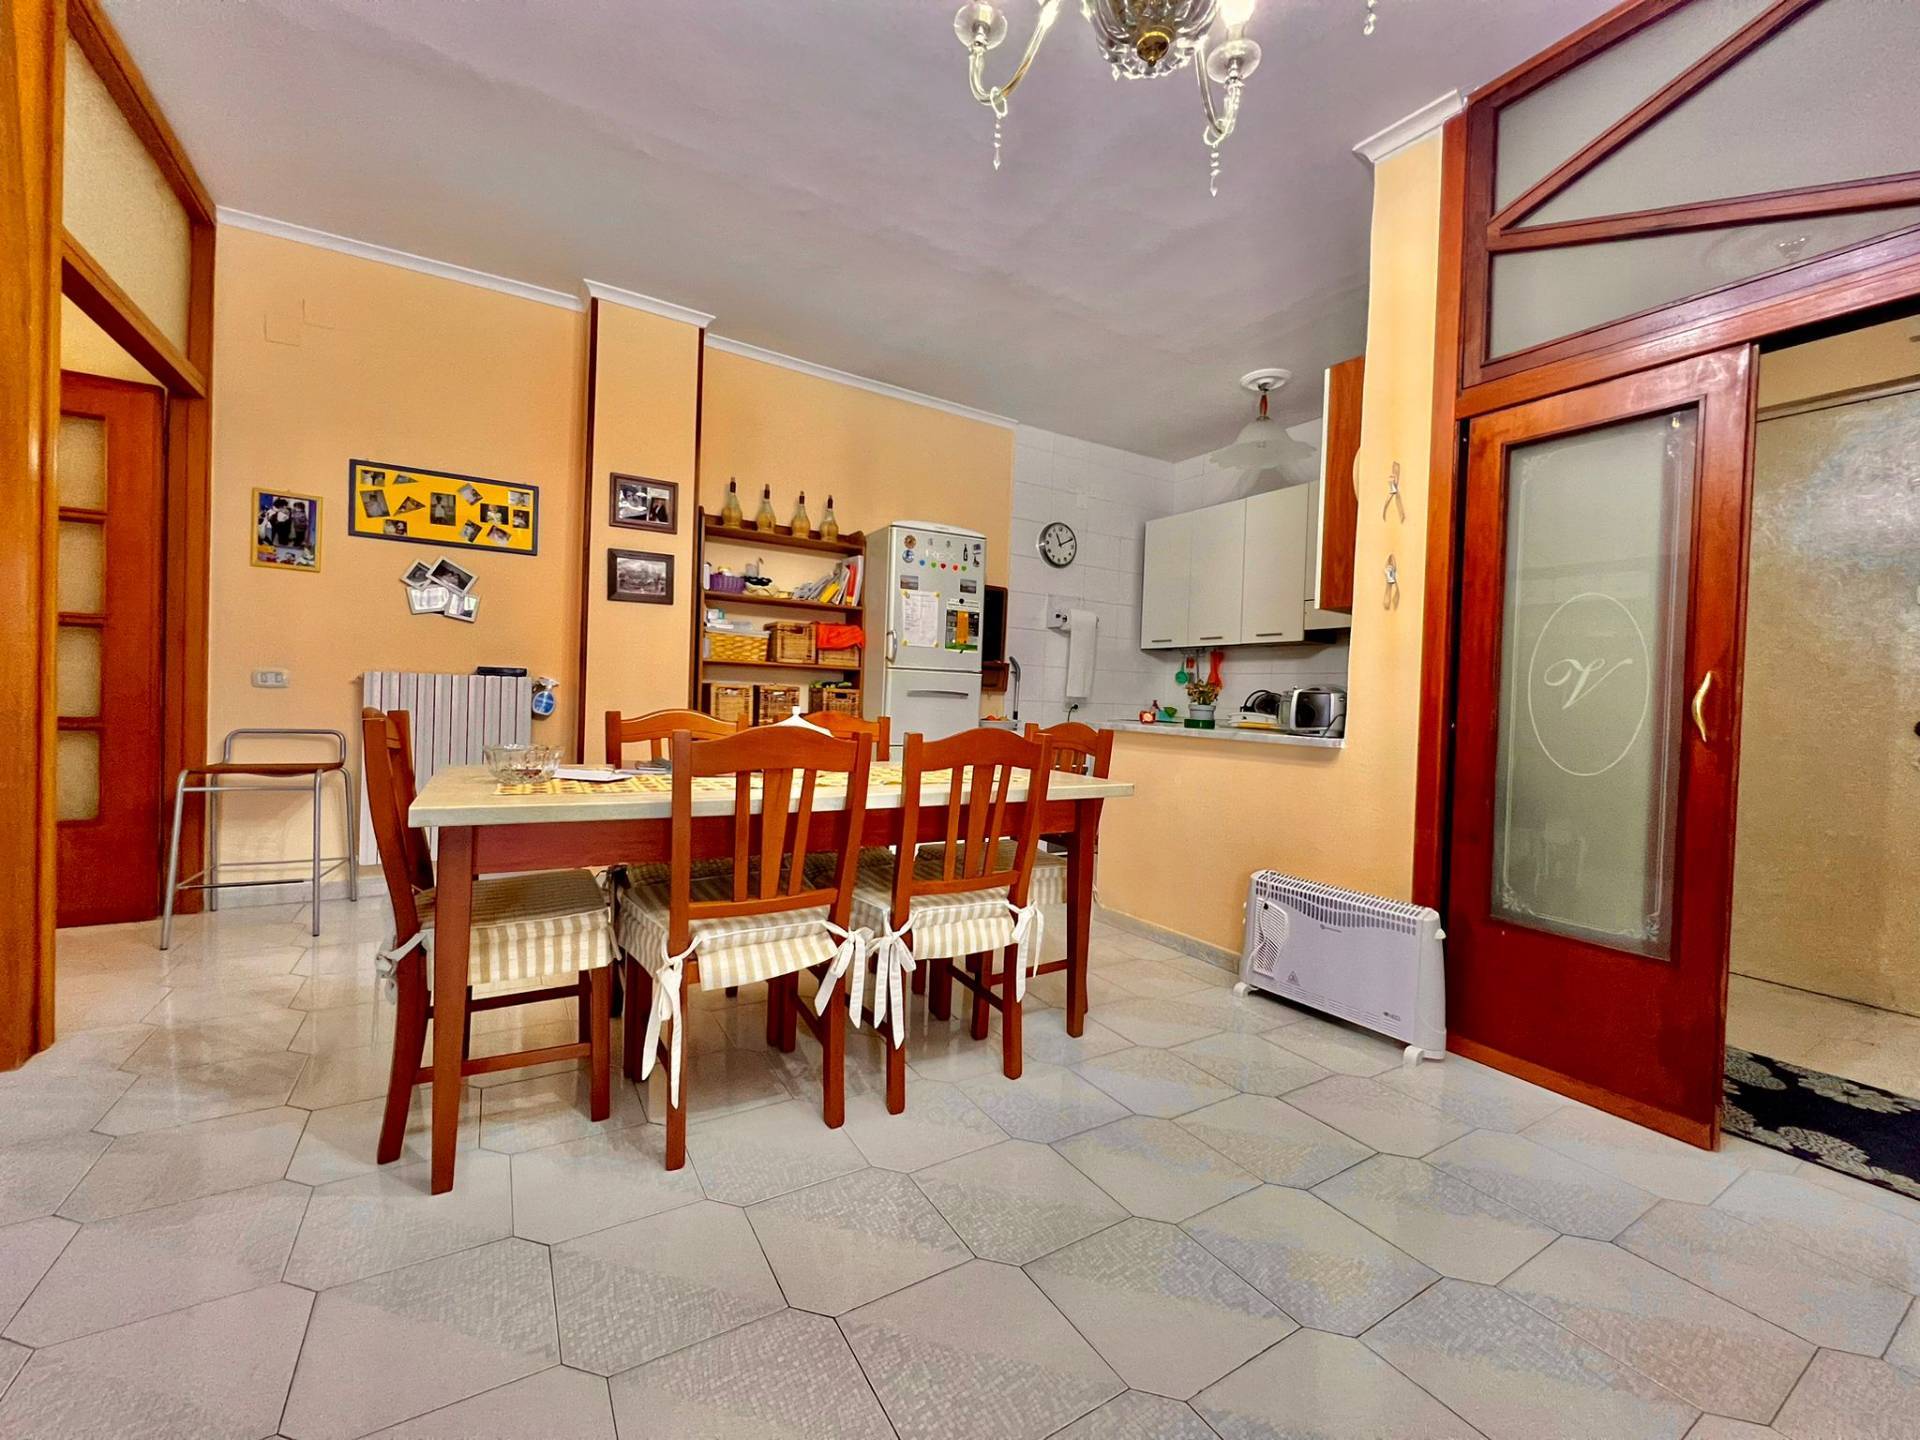 Appartamento in vendita a Casandrino, 3 locali, prezzo € 85.000 | PortaleAgenzieImmobiliari.it